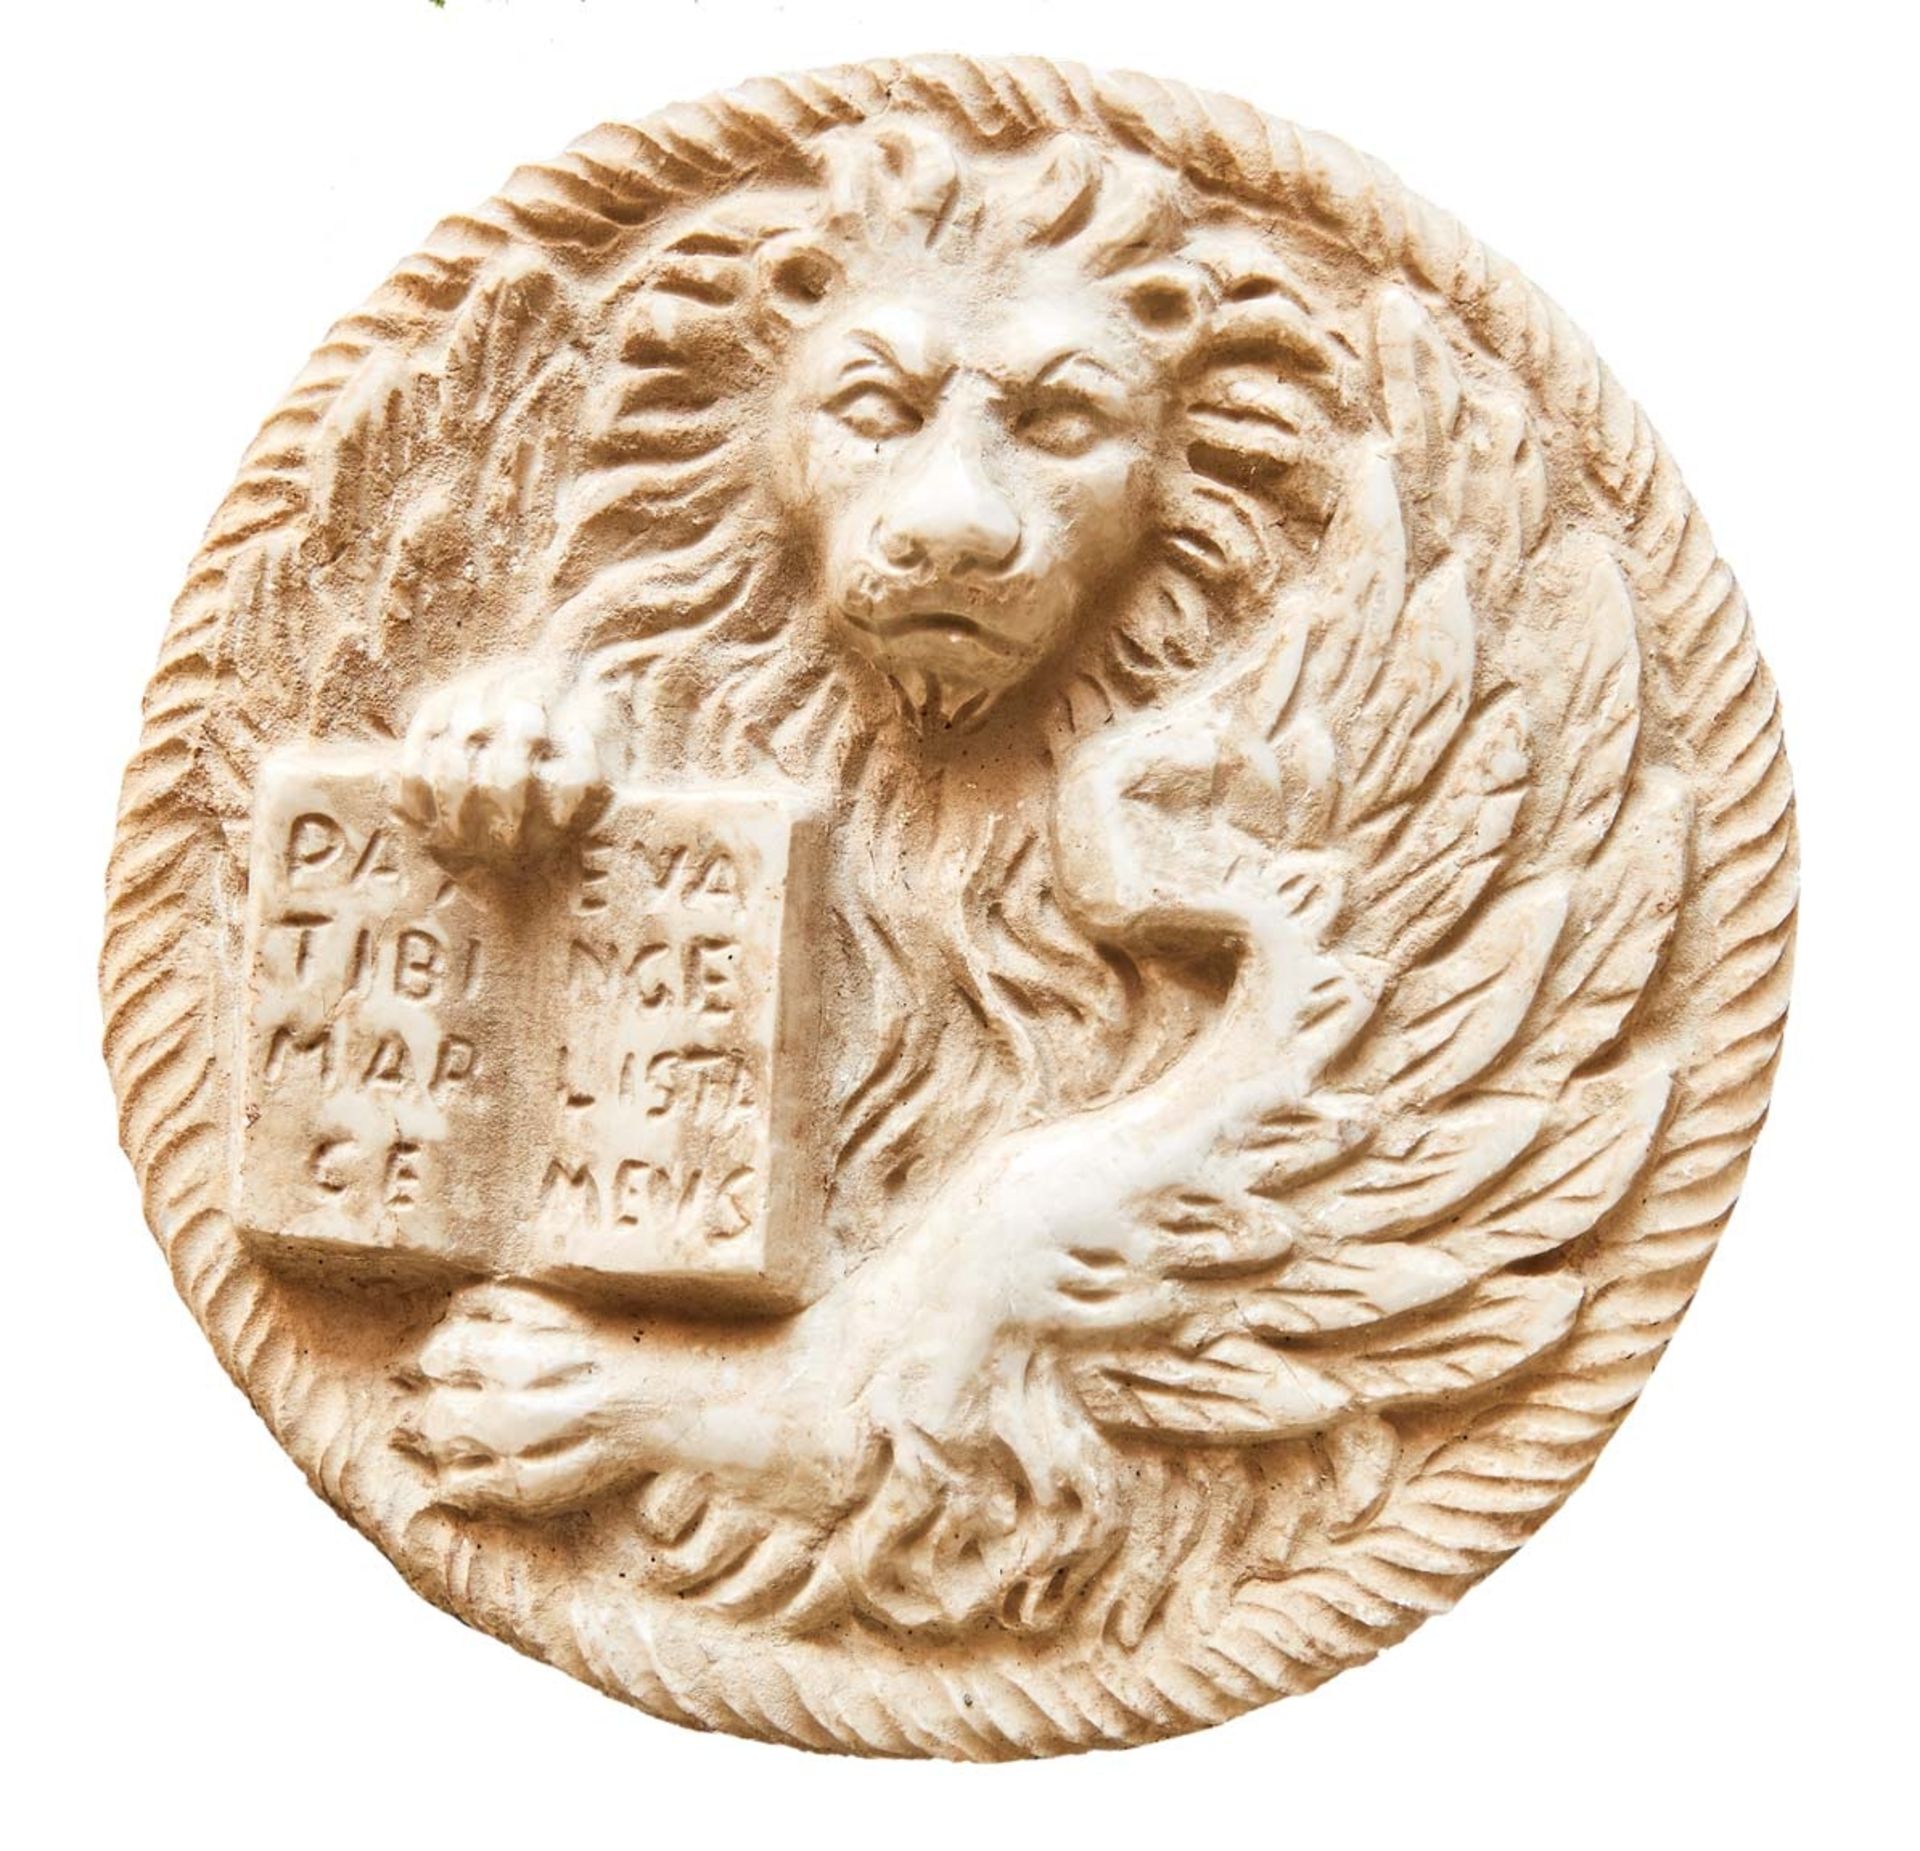 LöwentondoItalien, 20. Jh.Reliefierter Kopf des Markuslöwen mit geöffnetem Buch und Inschrift "PAX